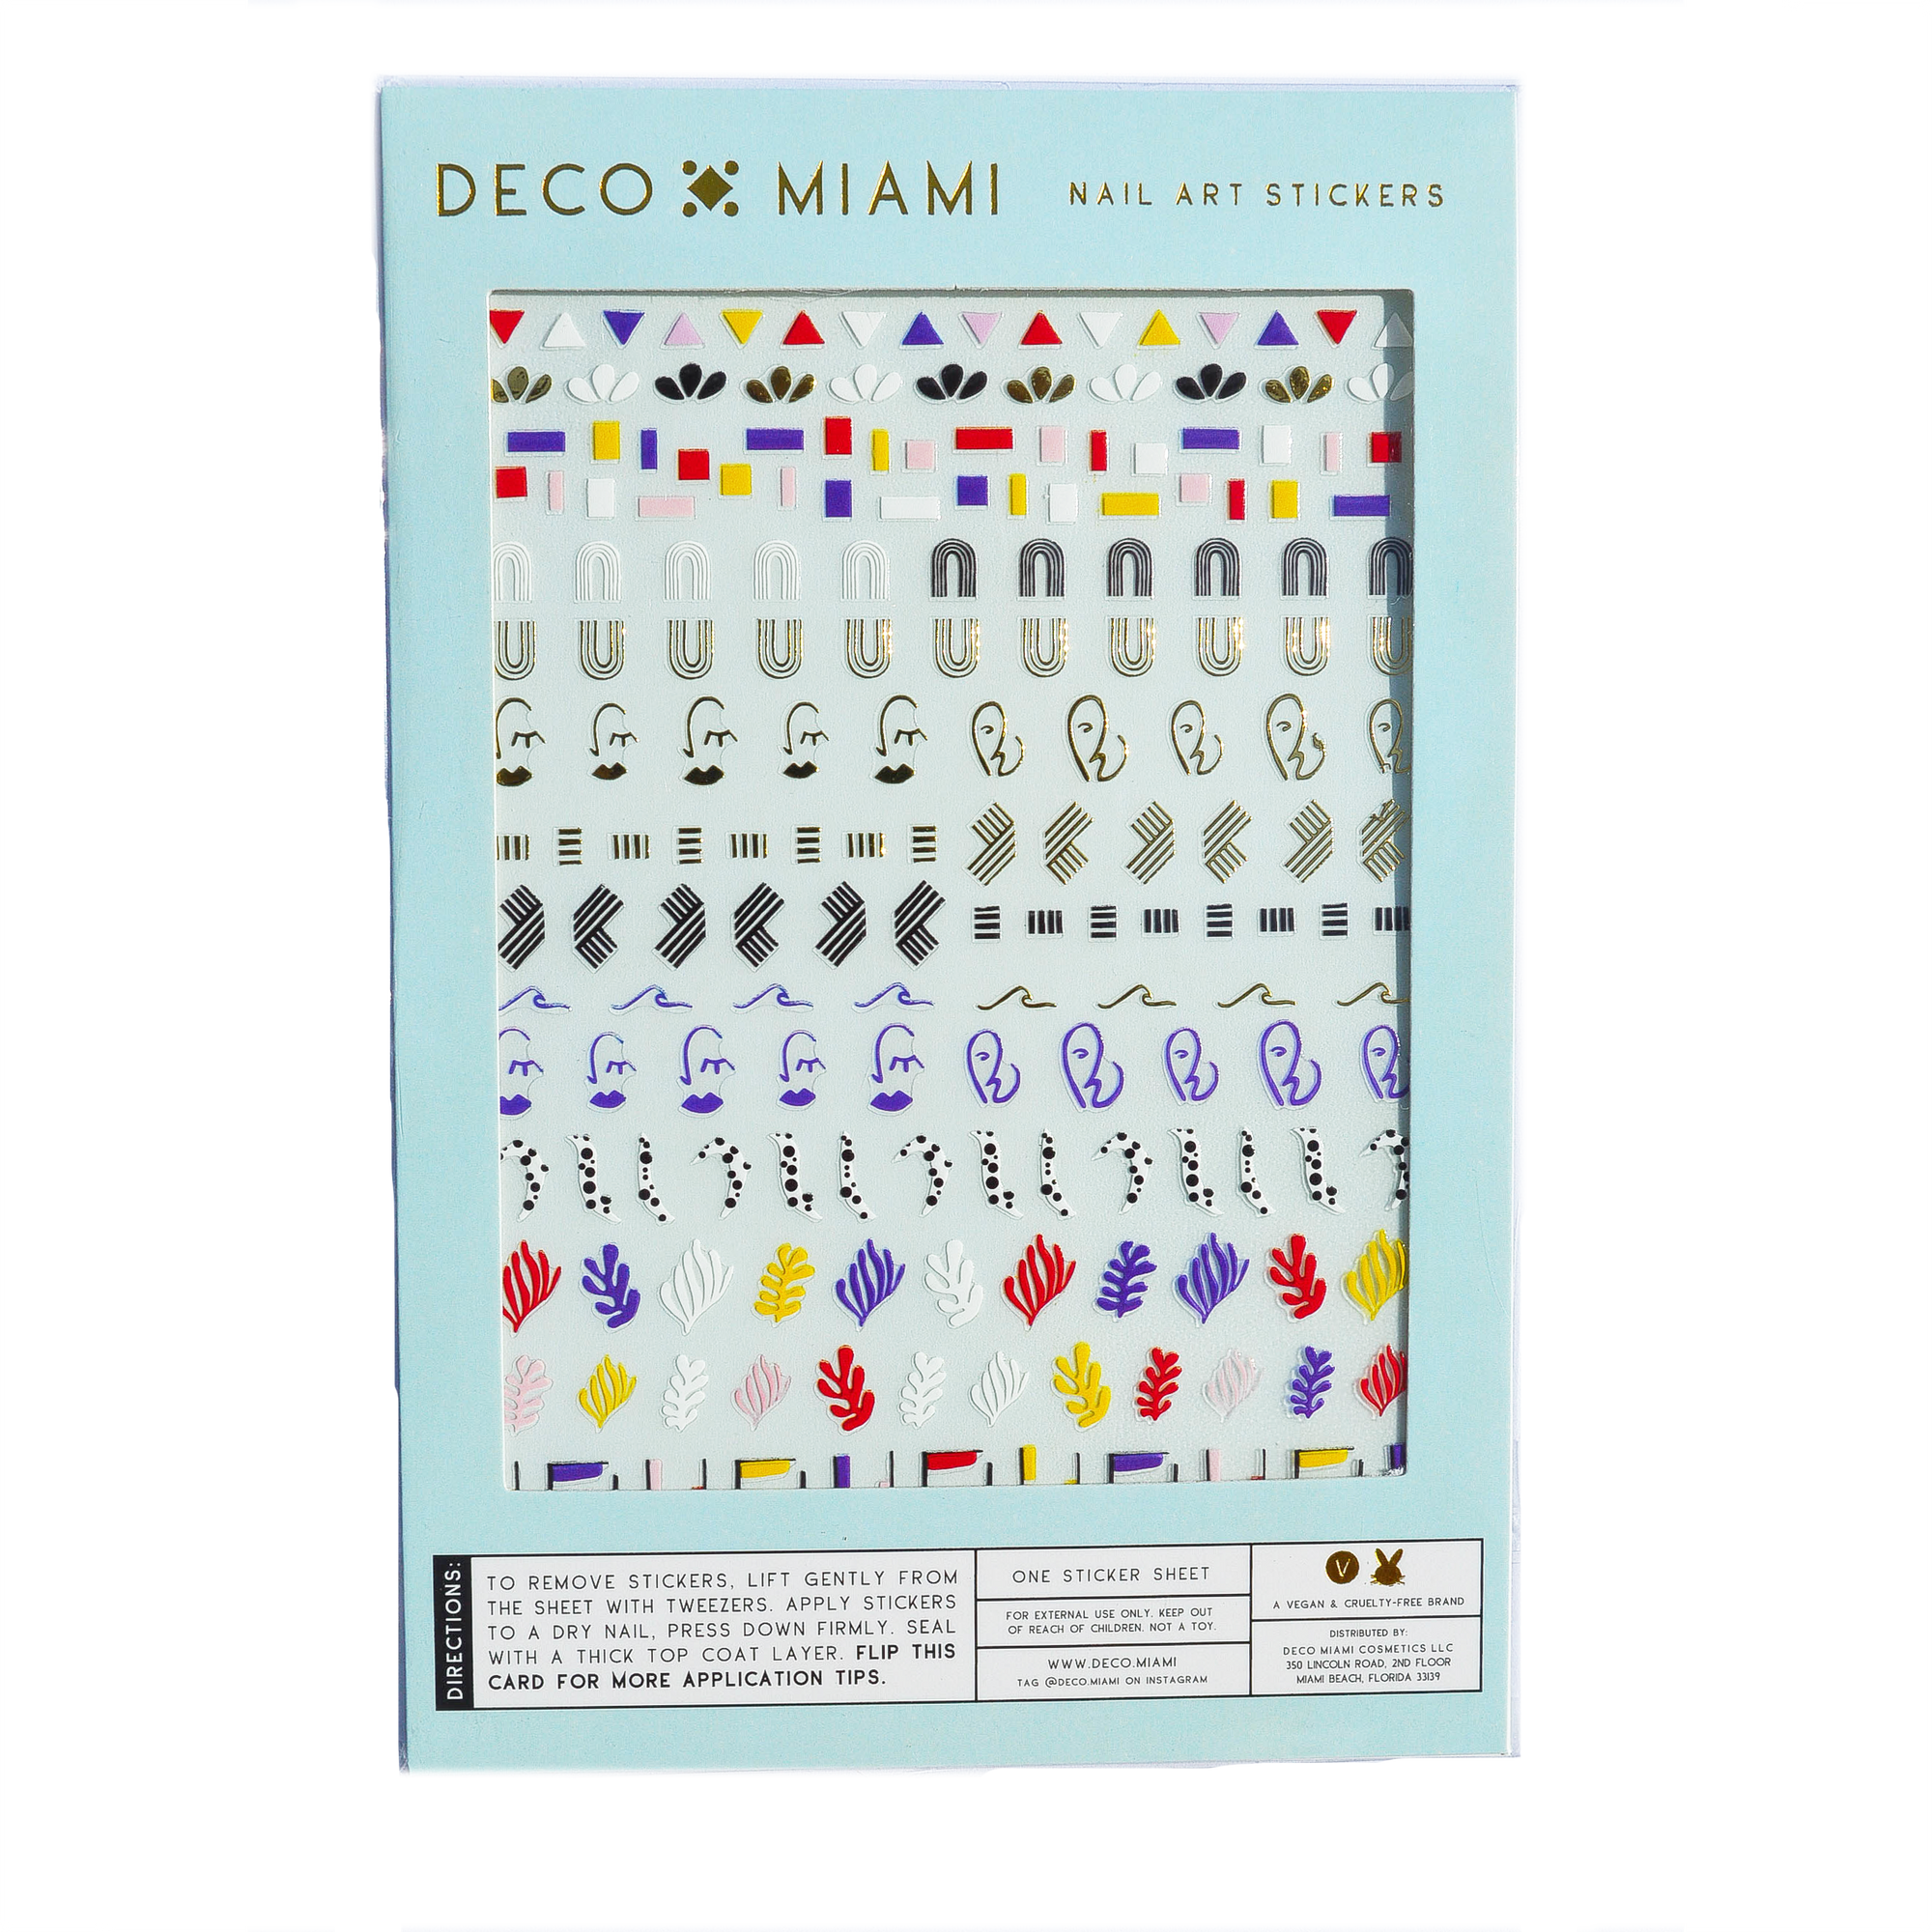 Deco Miami Nail Art Stickers ART THERAPY